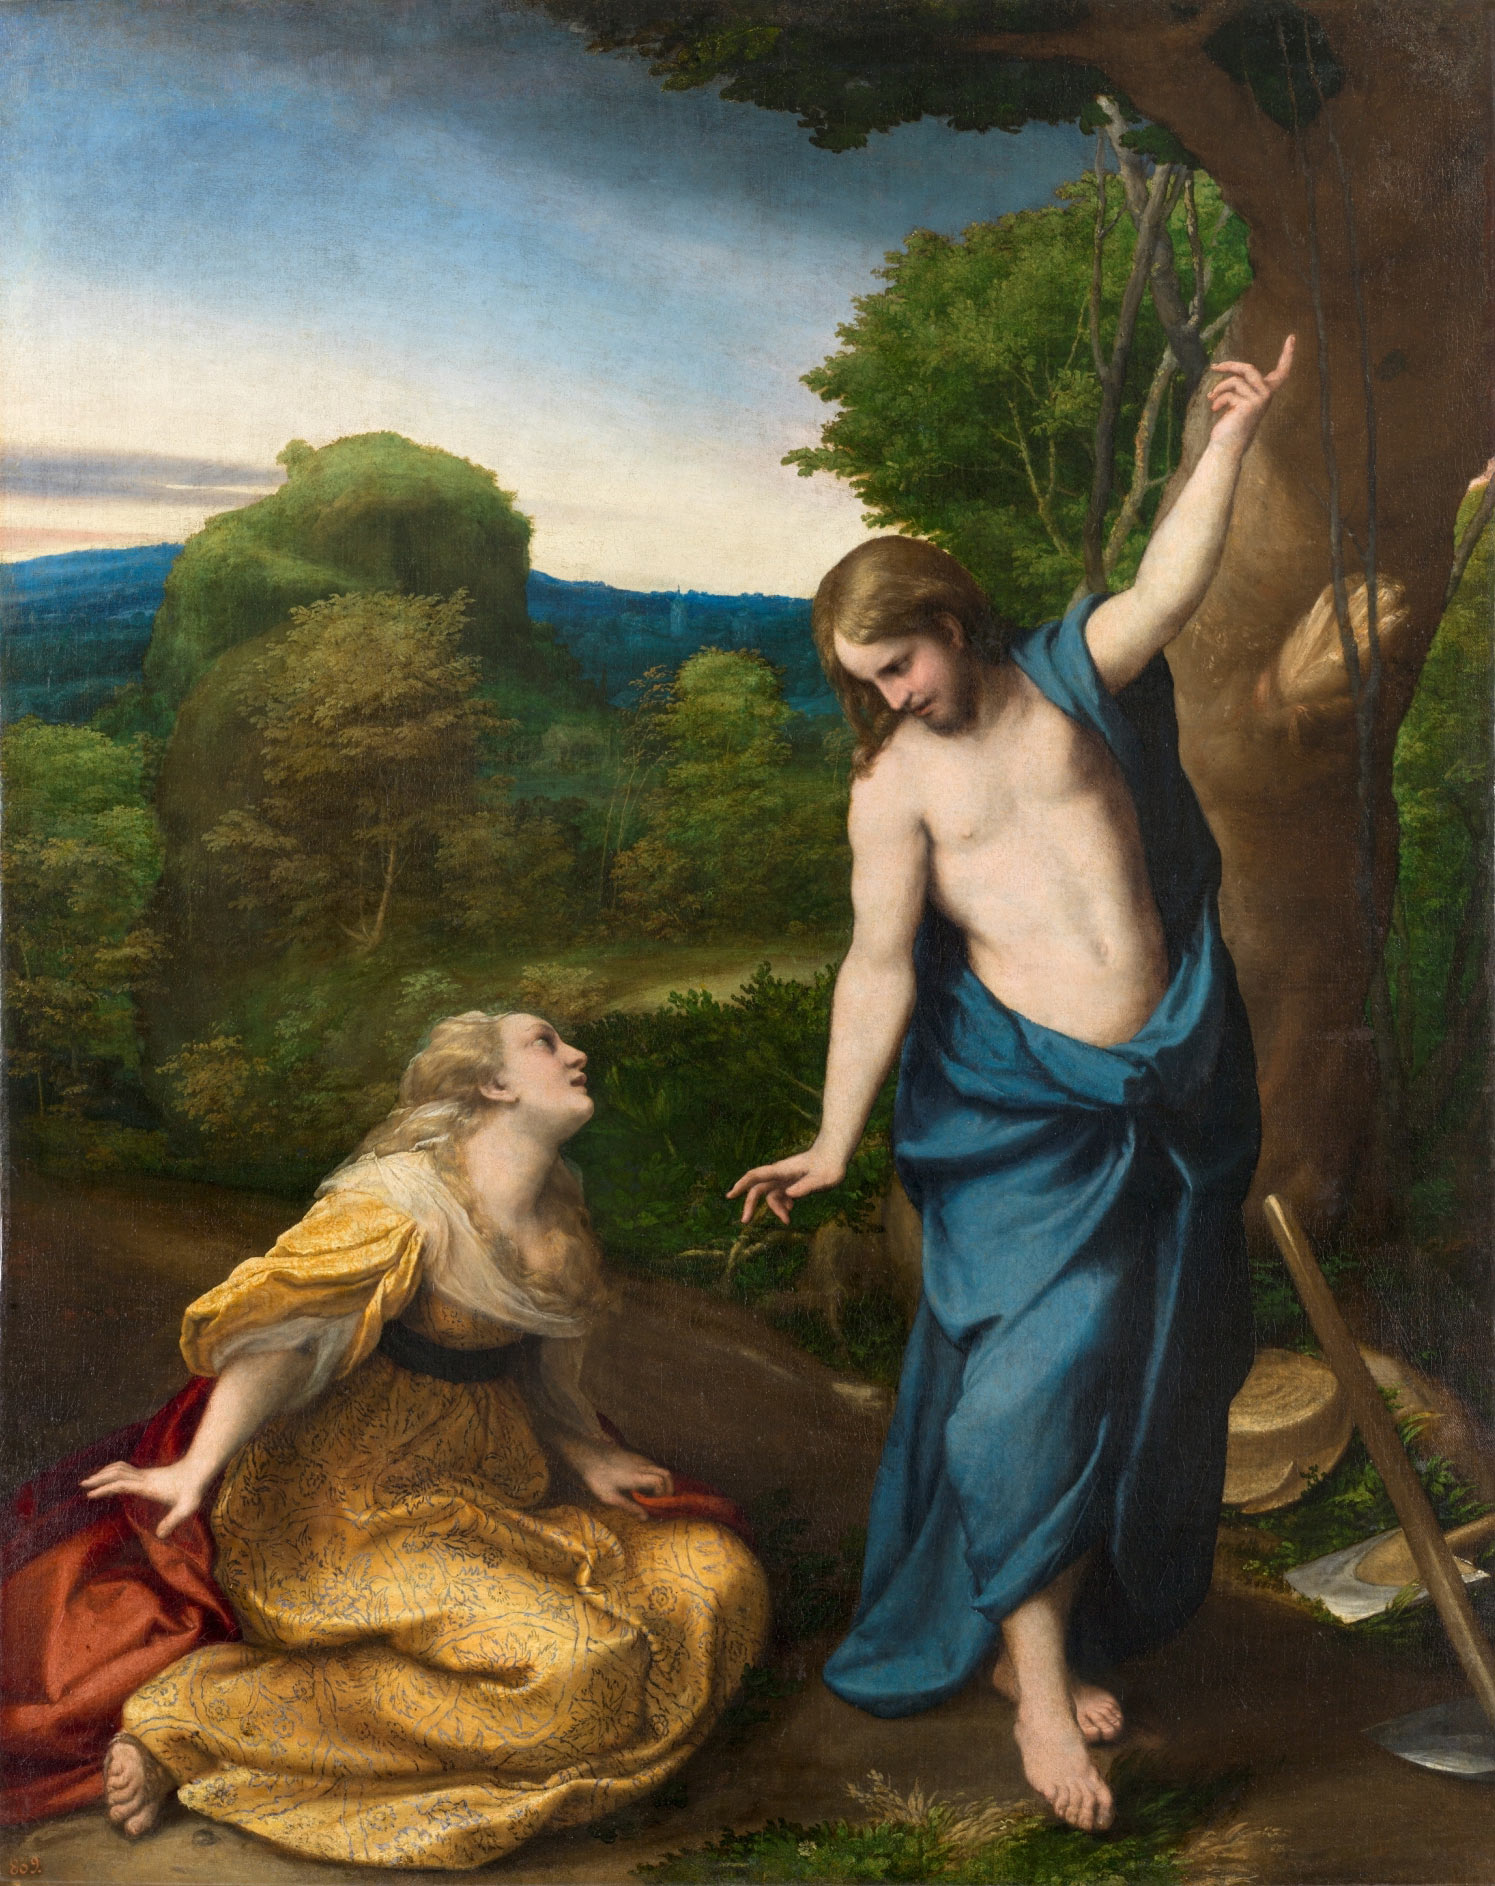 Correggio, Noli me tangere (1525 circa; olio su tavola trasportato su tela, 130 x 103 cm; Madrid, Prado)
